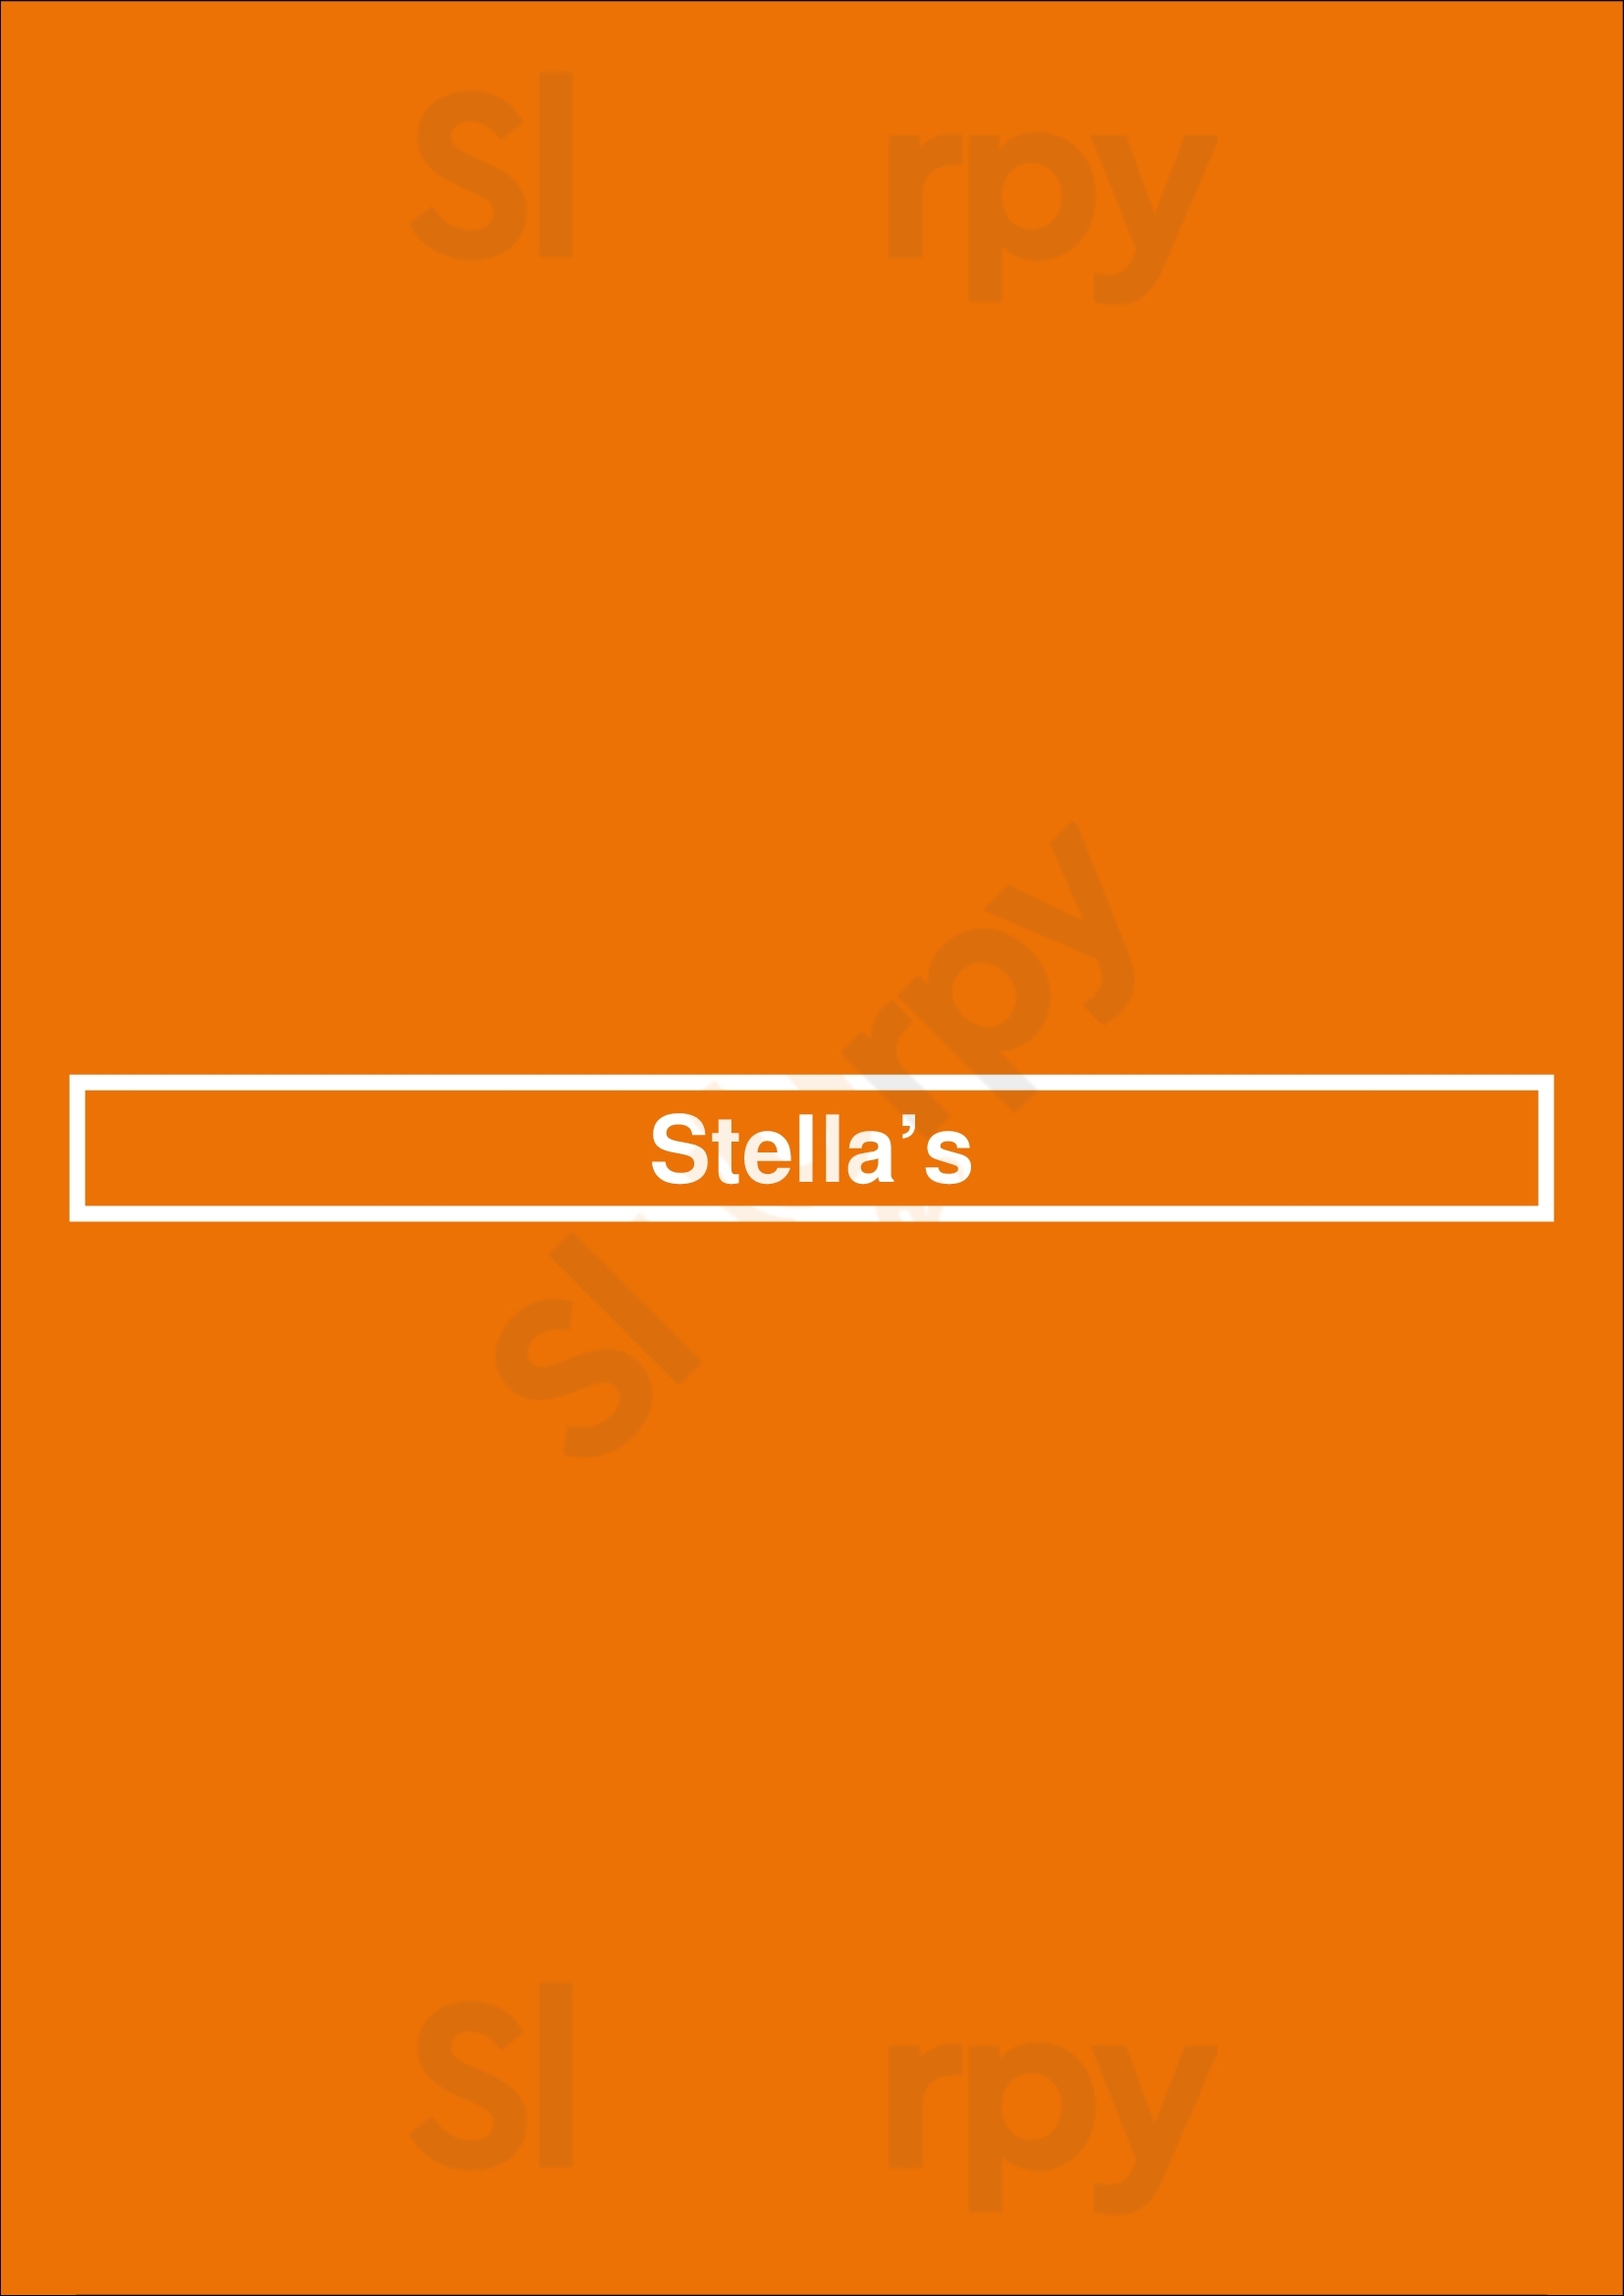 Stella’s Winnipeg Menu - 1